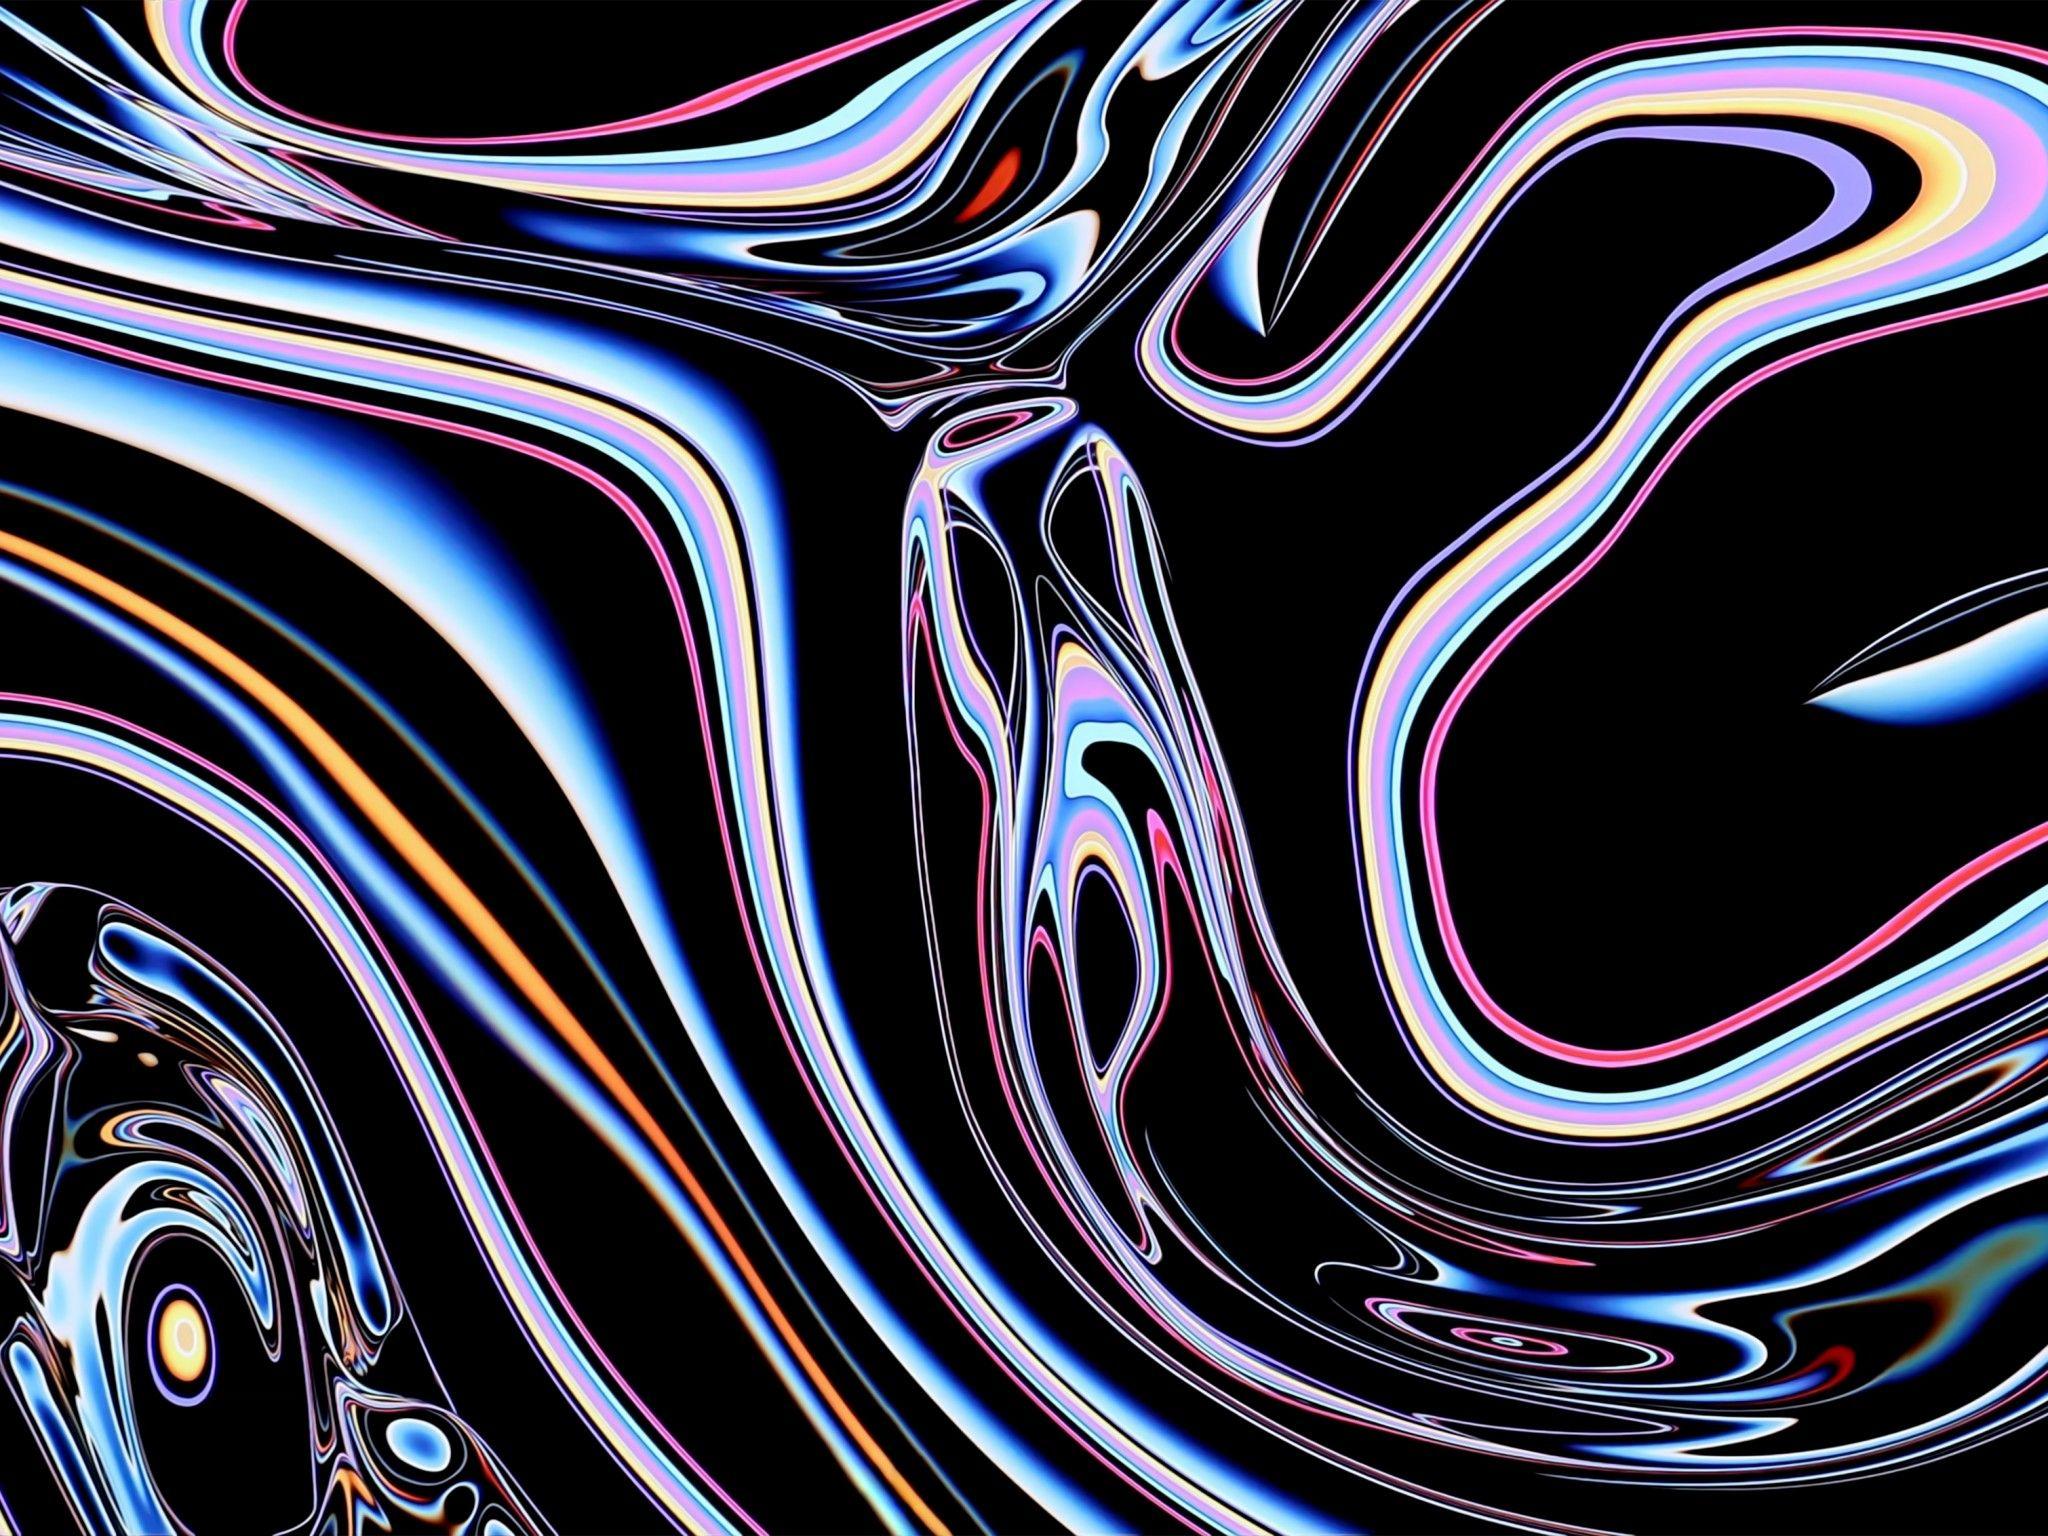 Liquid Abstract Desktop Wallpapers - Top Free Liquid Abstract Desktop